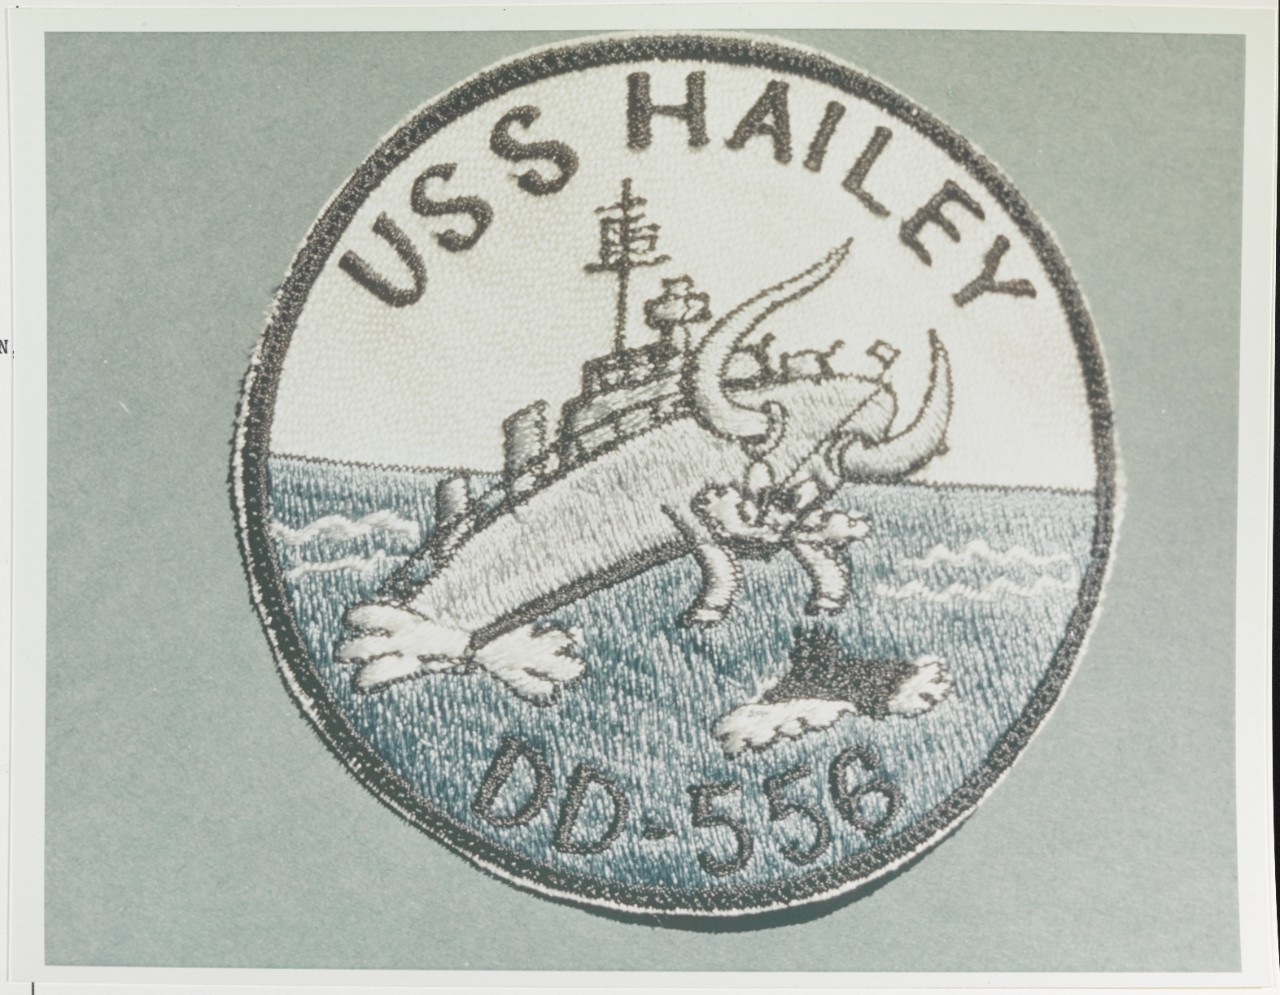 Insignia: USS HAILEY (DD-556)